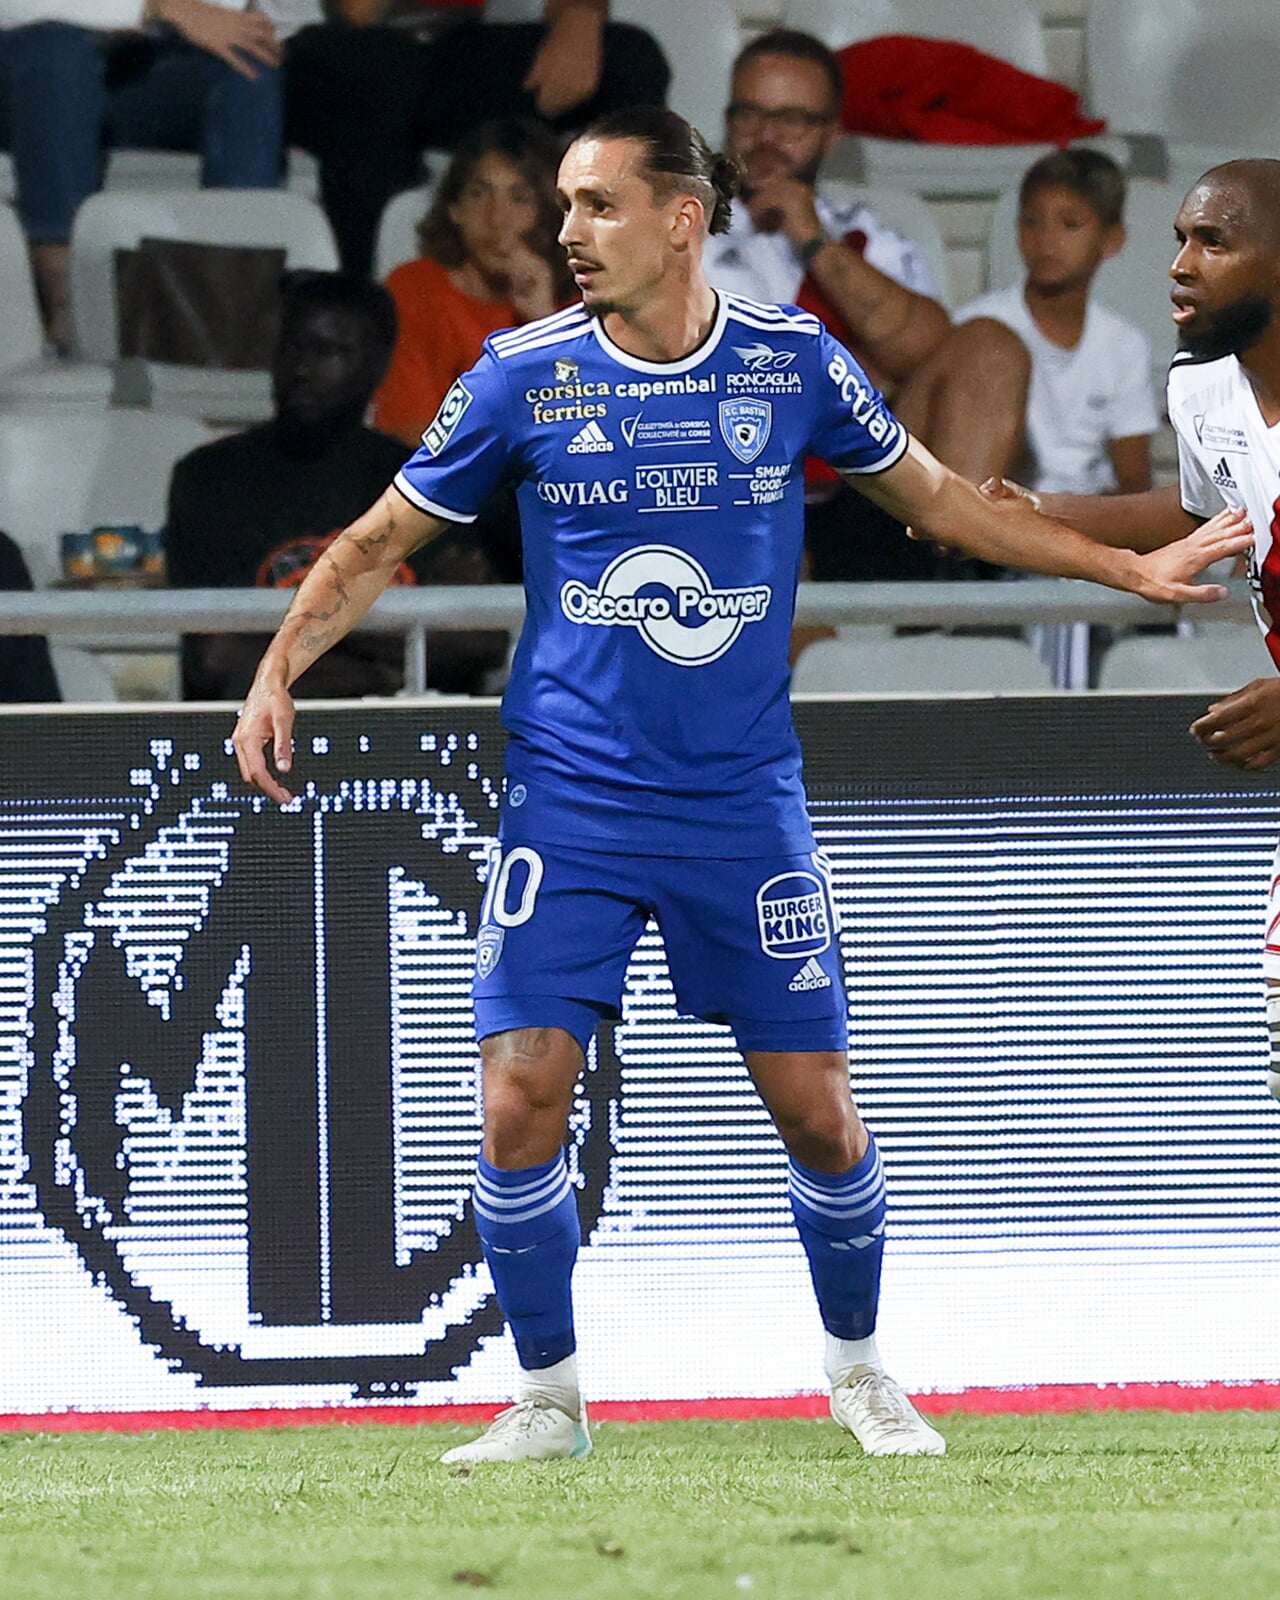 Le SC Bastia de Migouel Alfarela recevra l'AC Ajaccio pour le derby corse lors de la 23e journée.